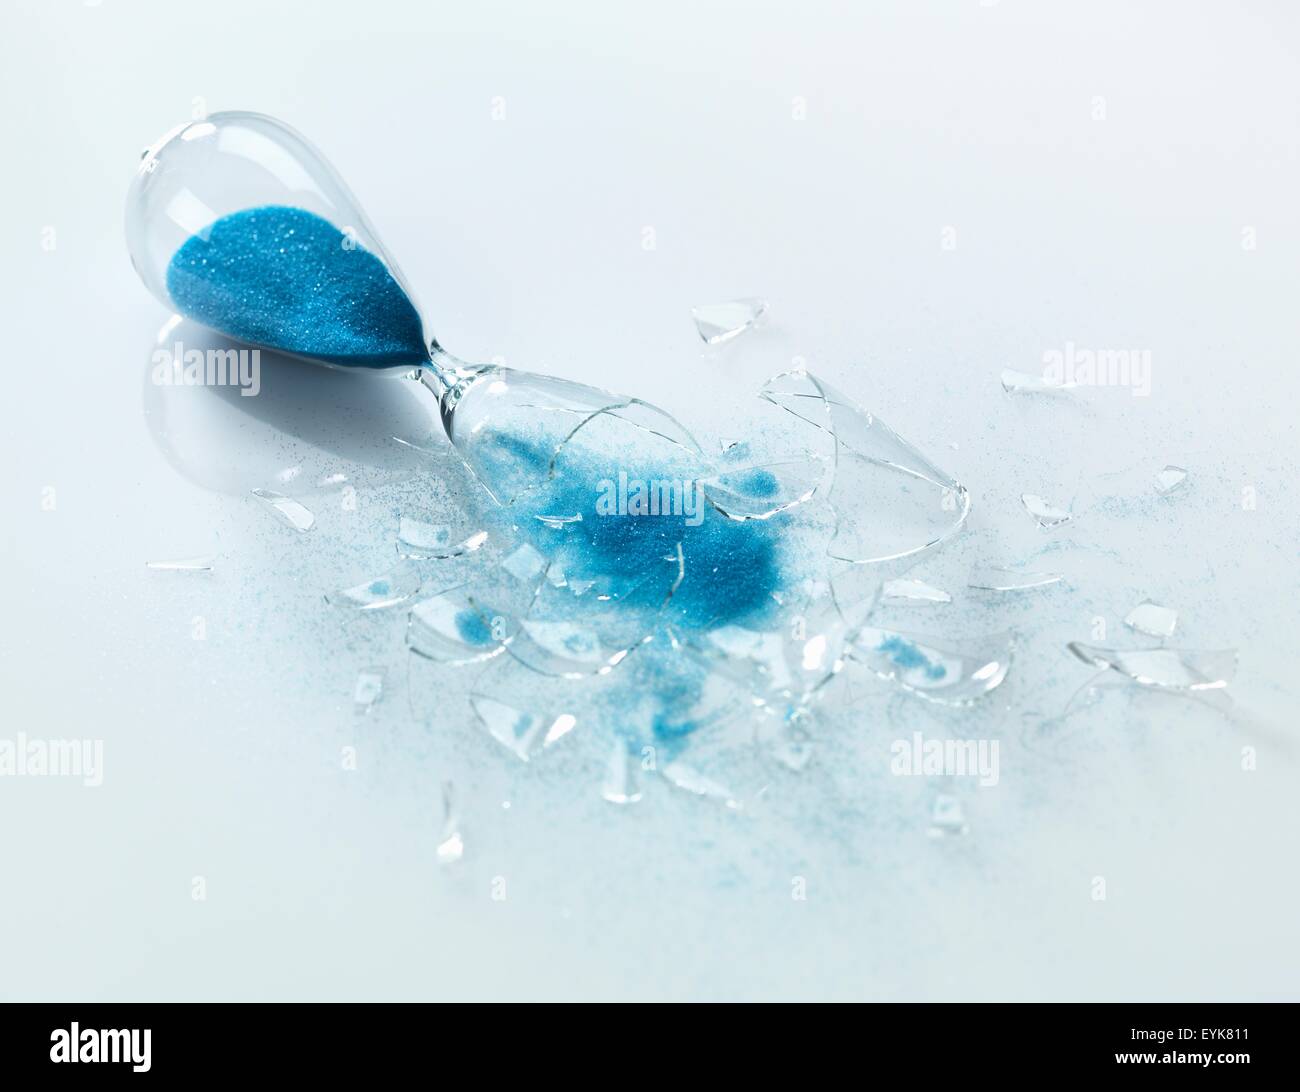 Sablier de verre cassée avec sable bleu coule Photo Stock - Alamy